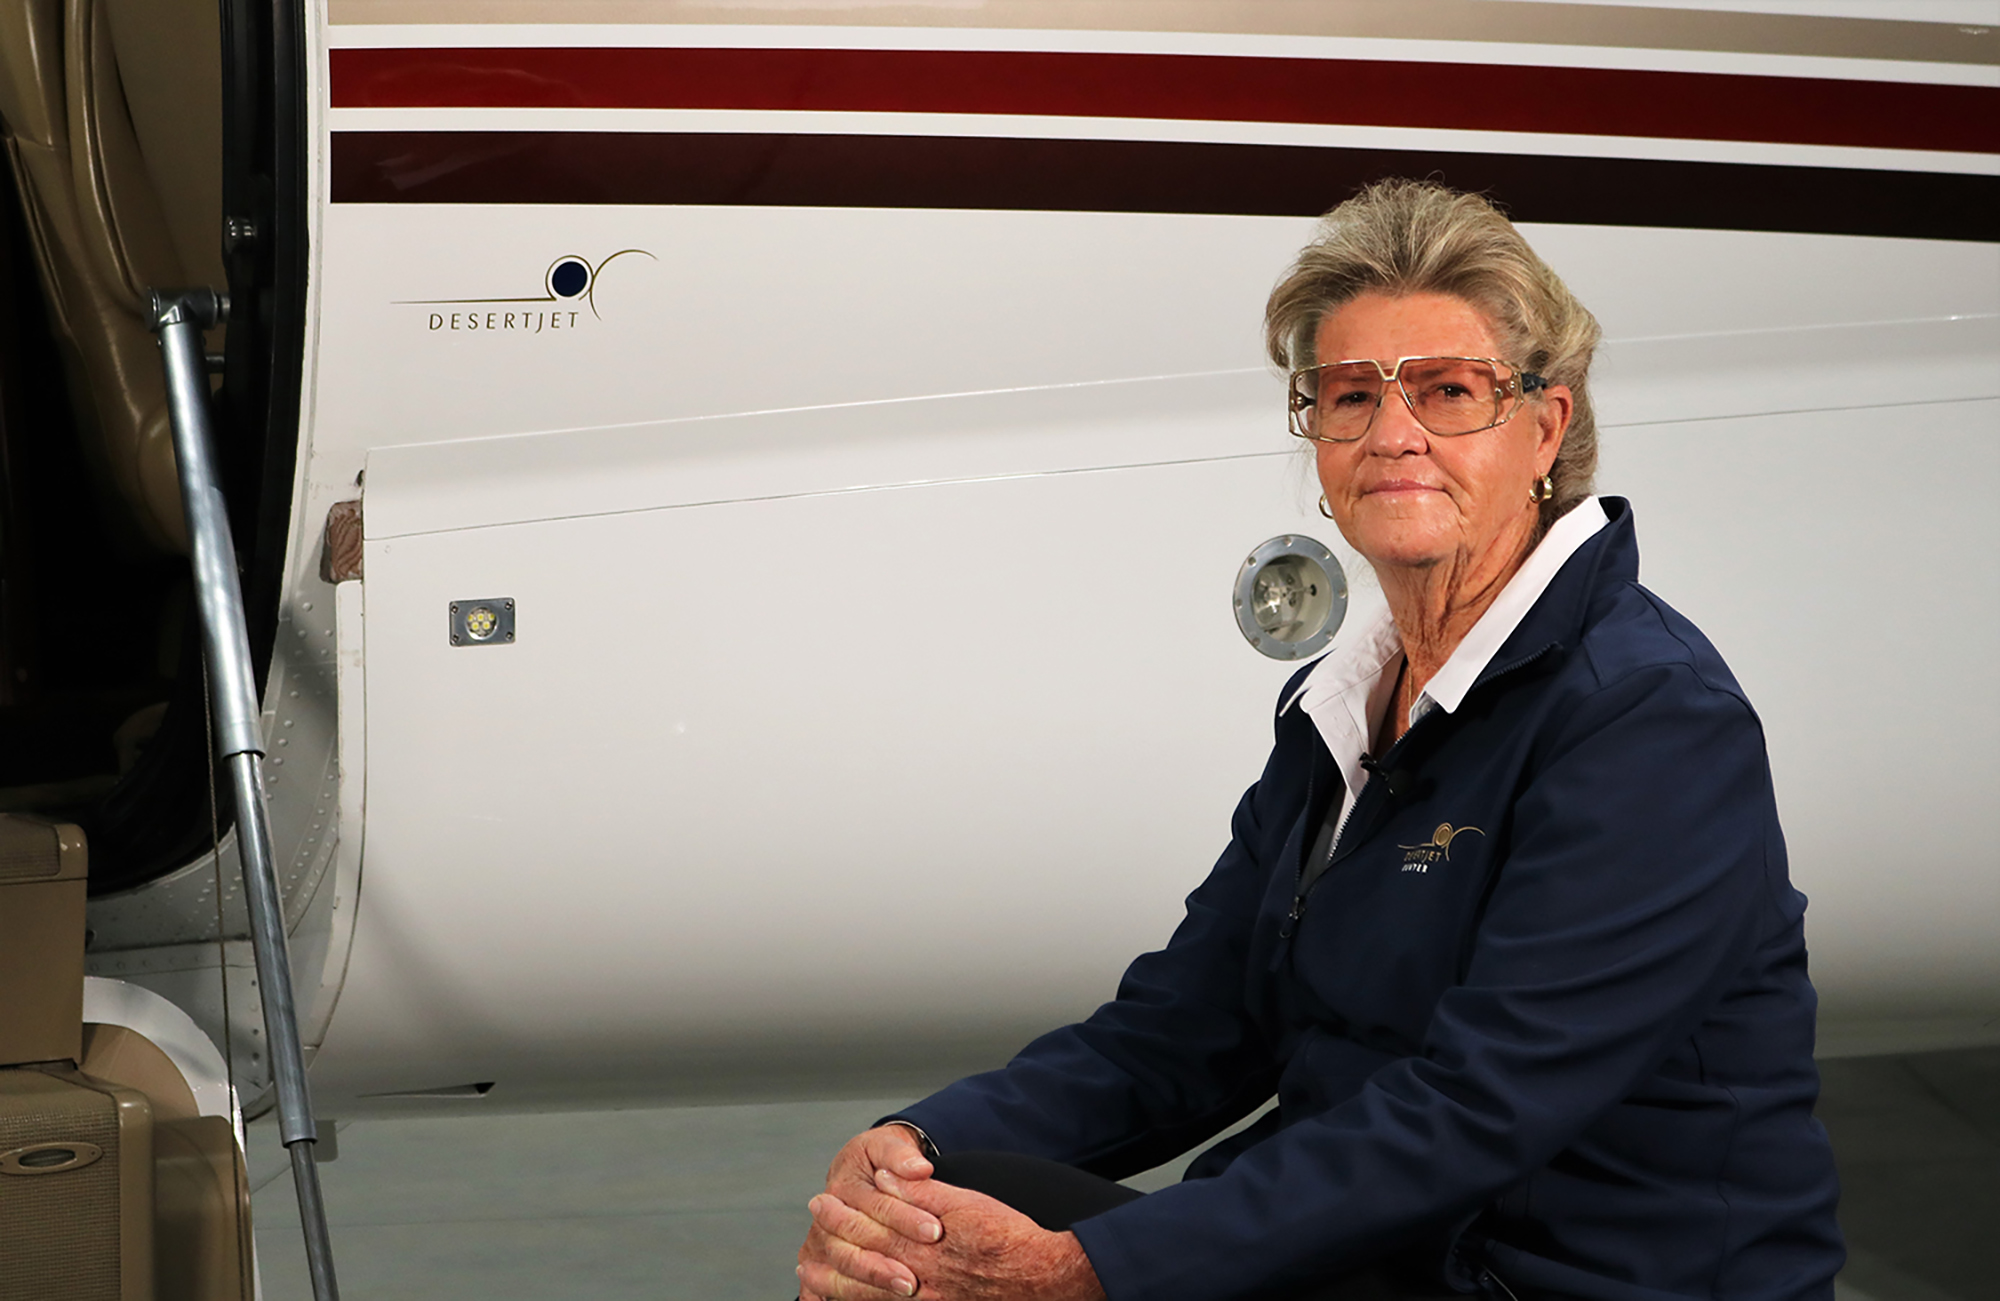 Desert Jet | Womens History Month, Desert Jet Centers Peni Nelson Featured